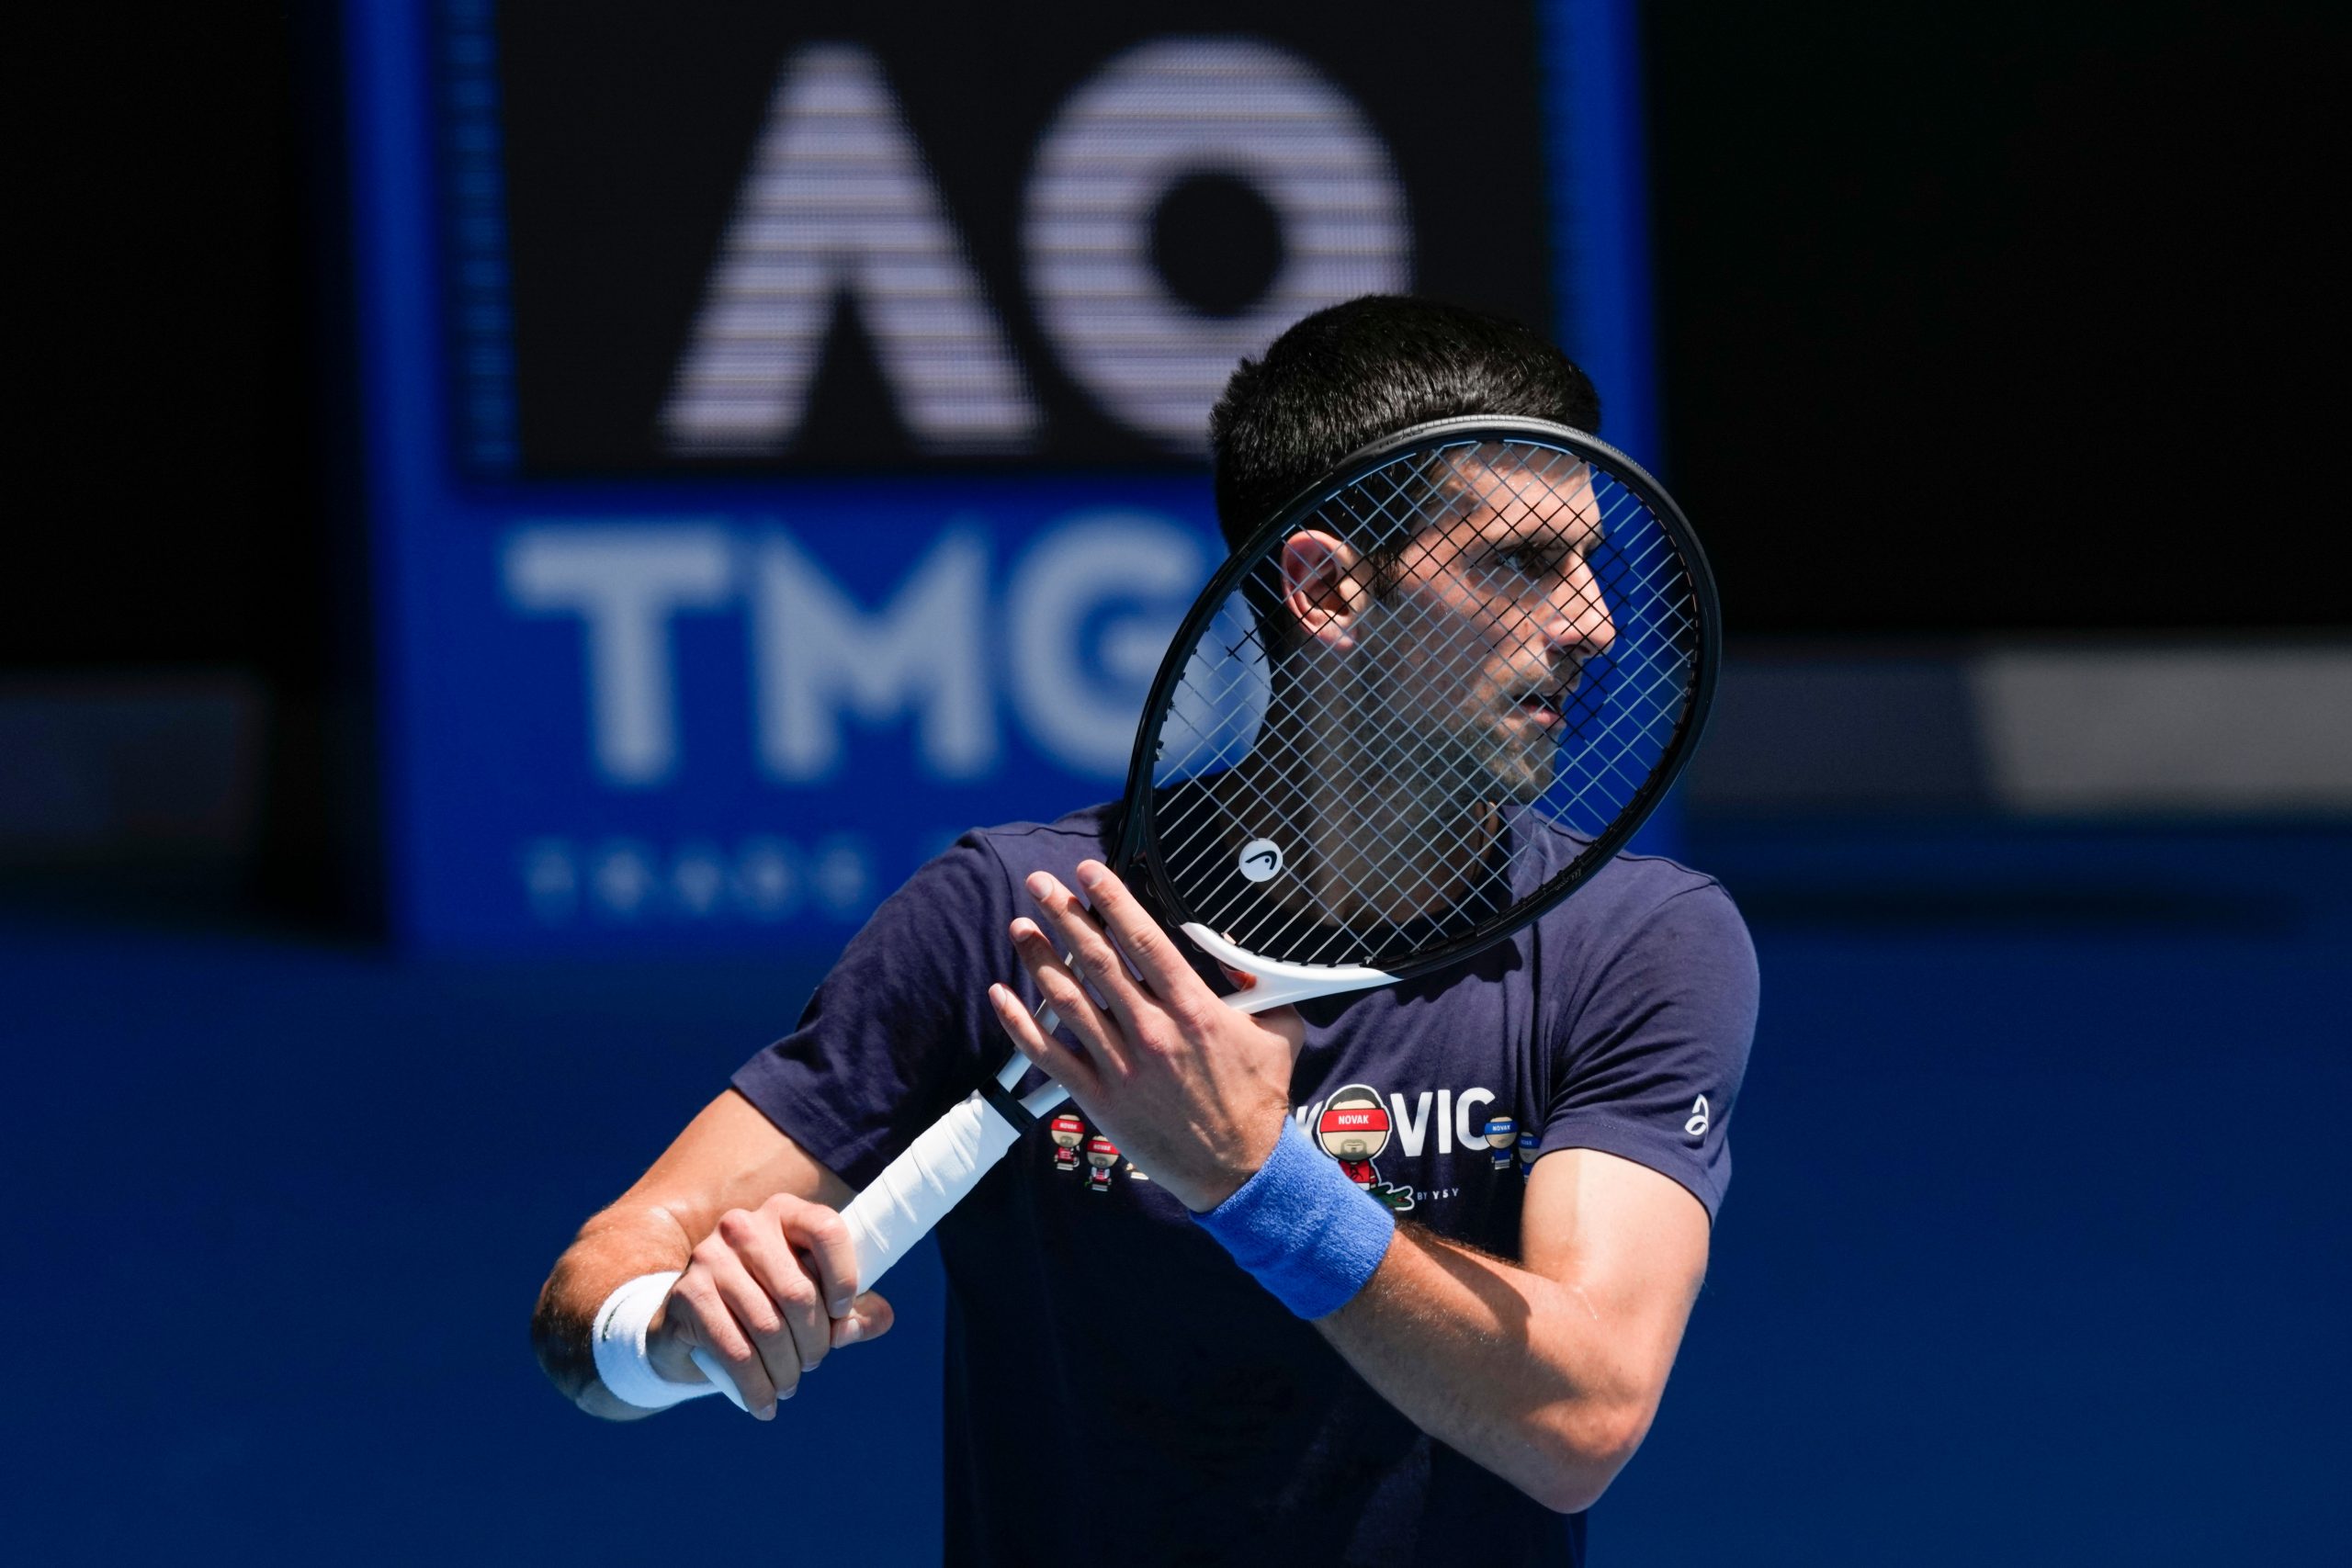 Novak Djokovic wins his first match after Australian Open saga